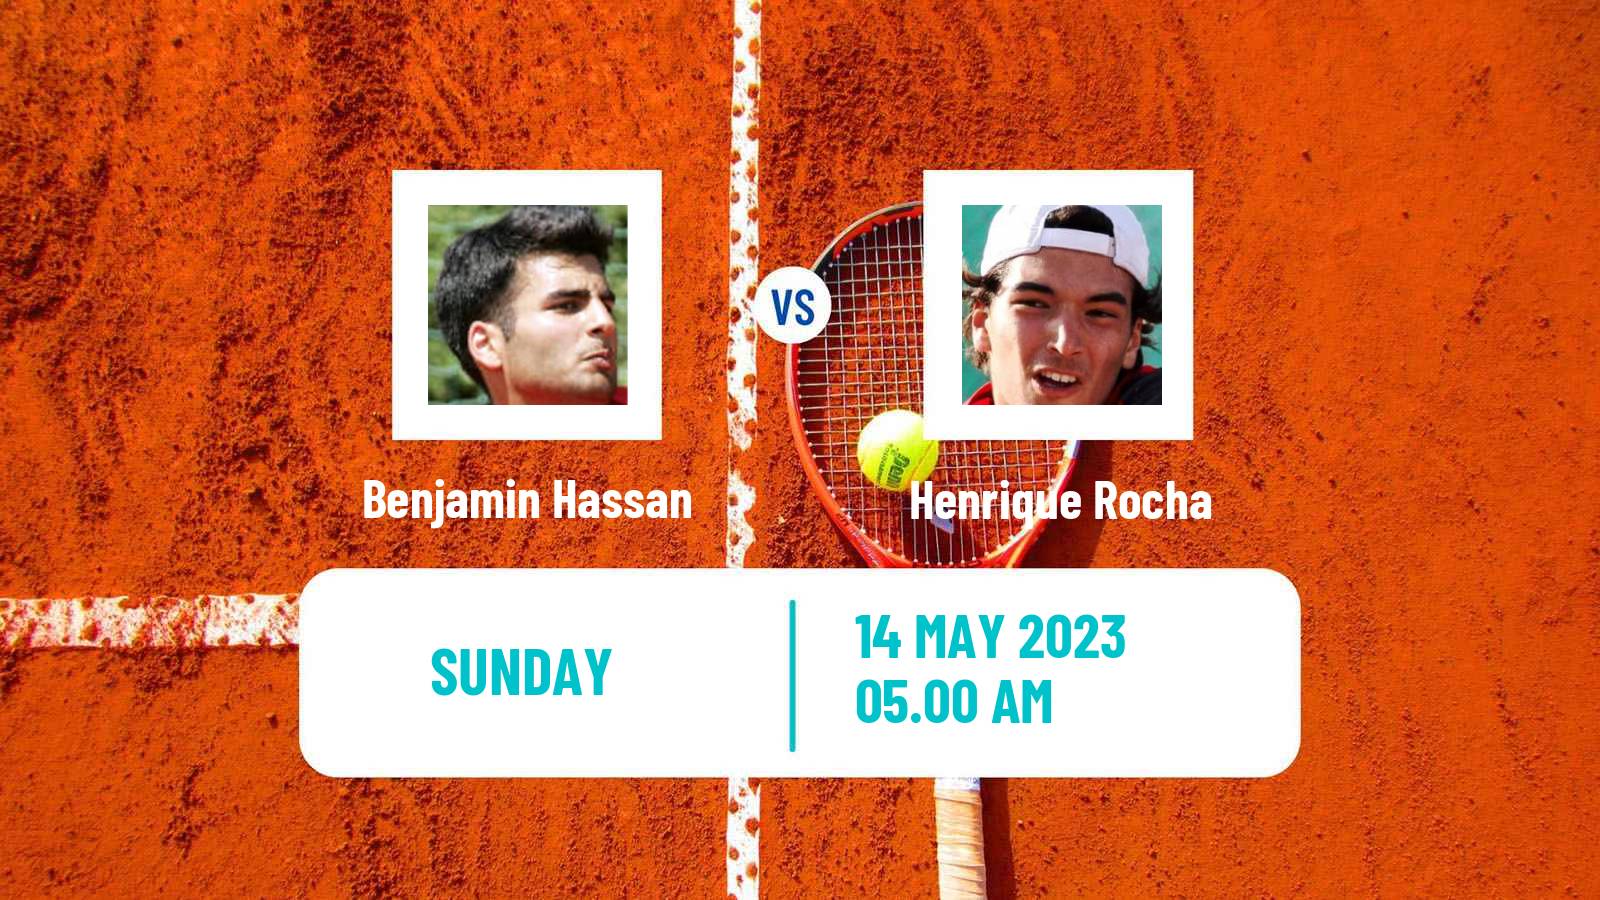 Tennis ATP Challenger Benjamin Hassan - Henrique Rocha